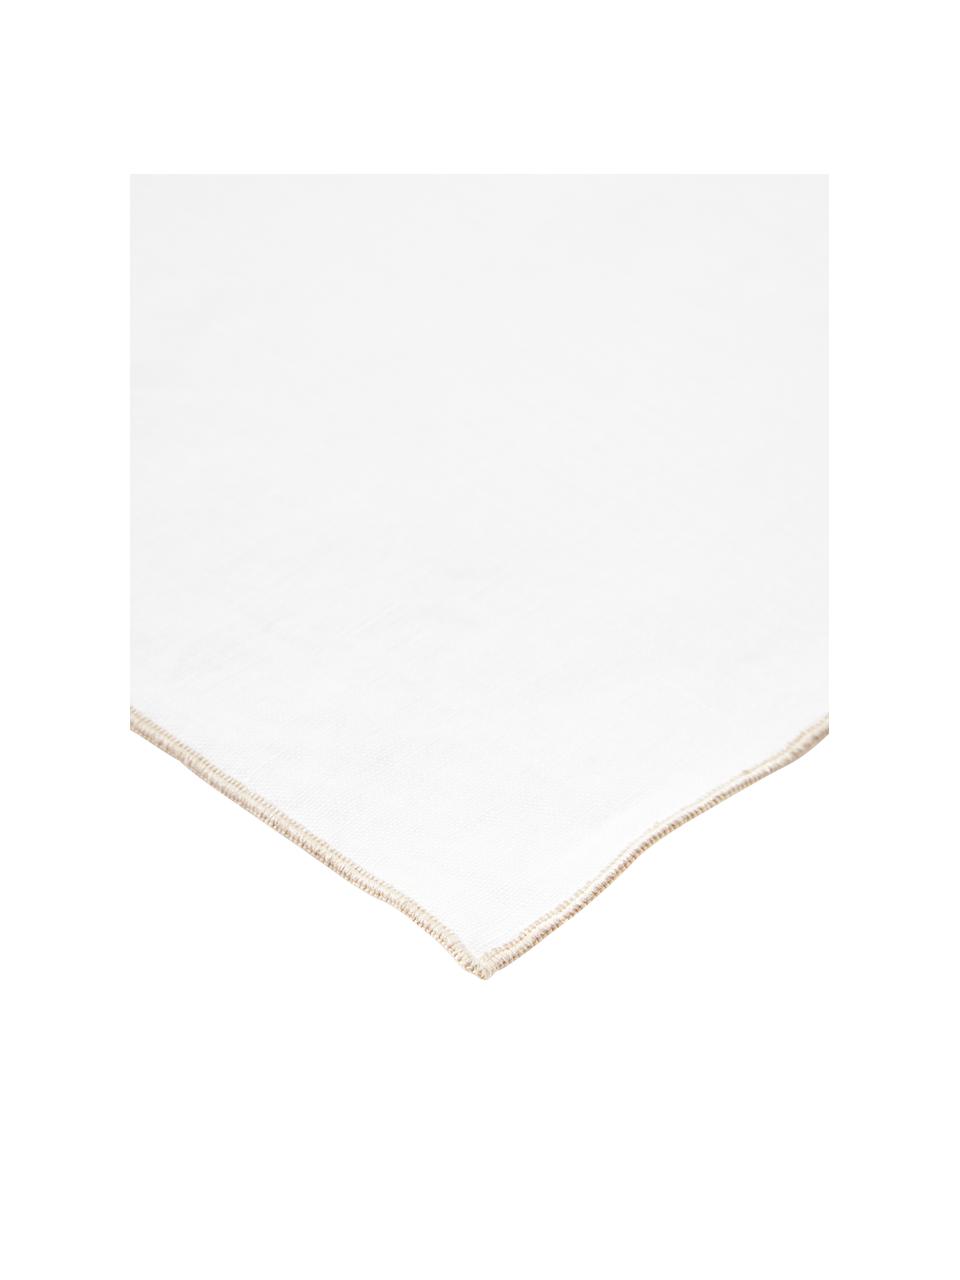 Serwetka z lnu Kennedy, 4 szt., 100% len prany z certyfikatem European Flax, Biały, S 45 x D 45 cm